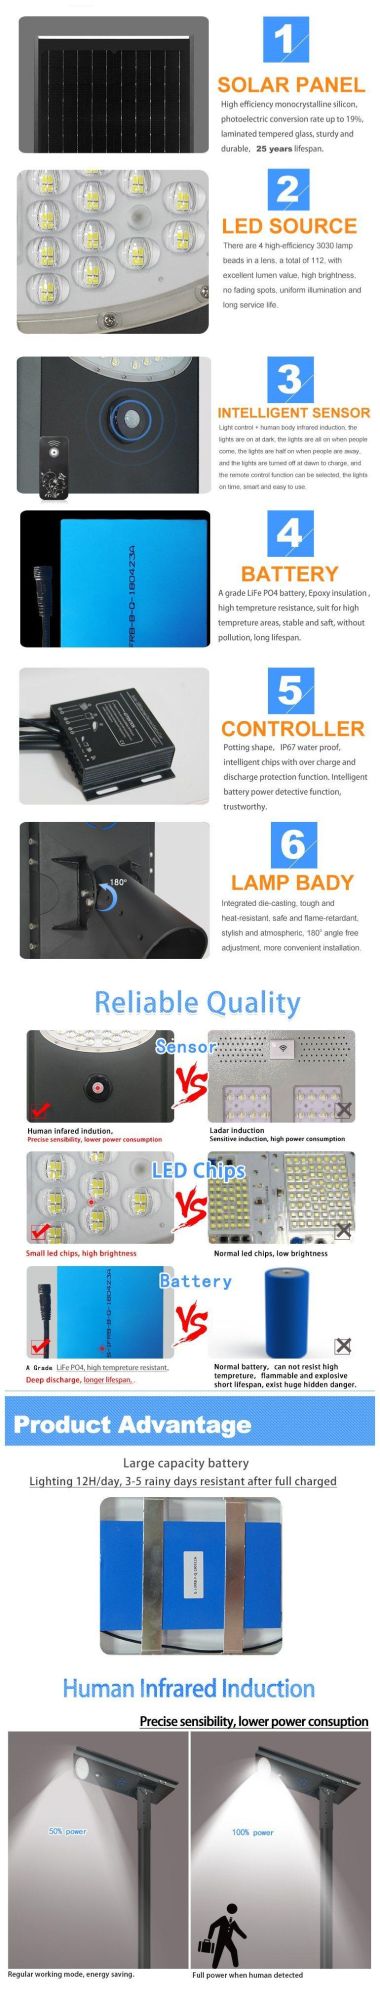 Best Value Solar LED Light for Country Roads